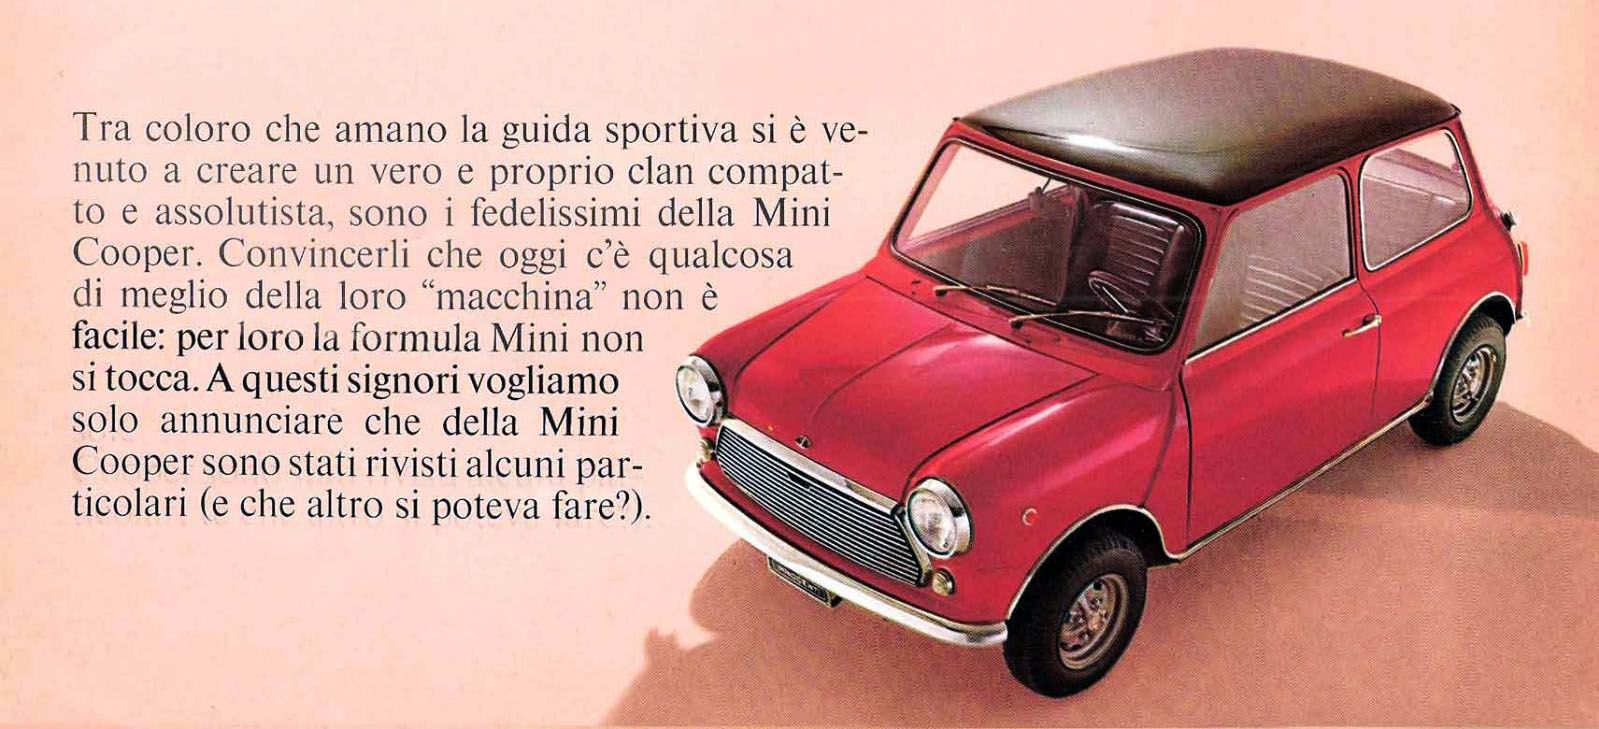 Estratto brochure del 1970 che ritrae un esemplare rosso di Innocenti Mini Cooper MK3